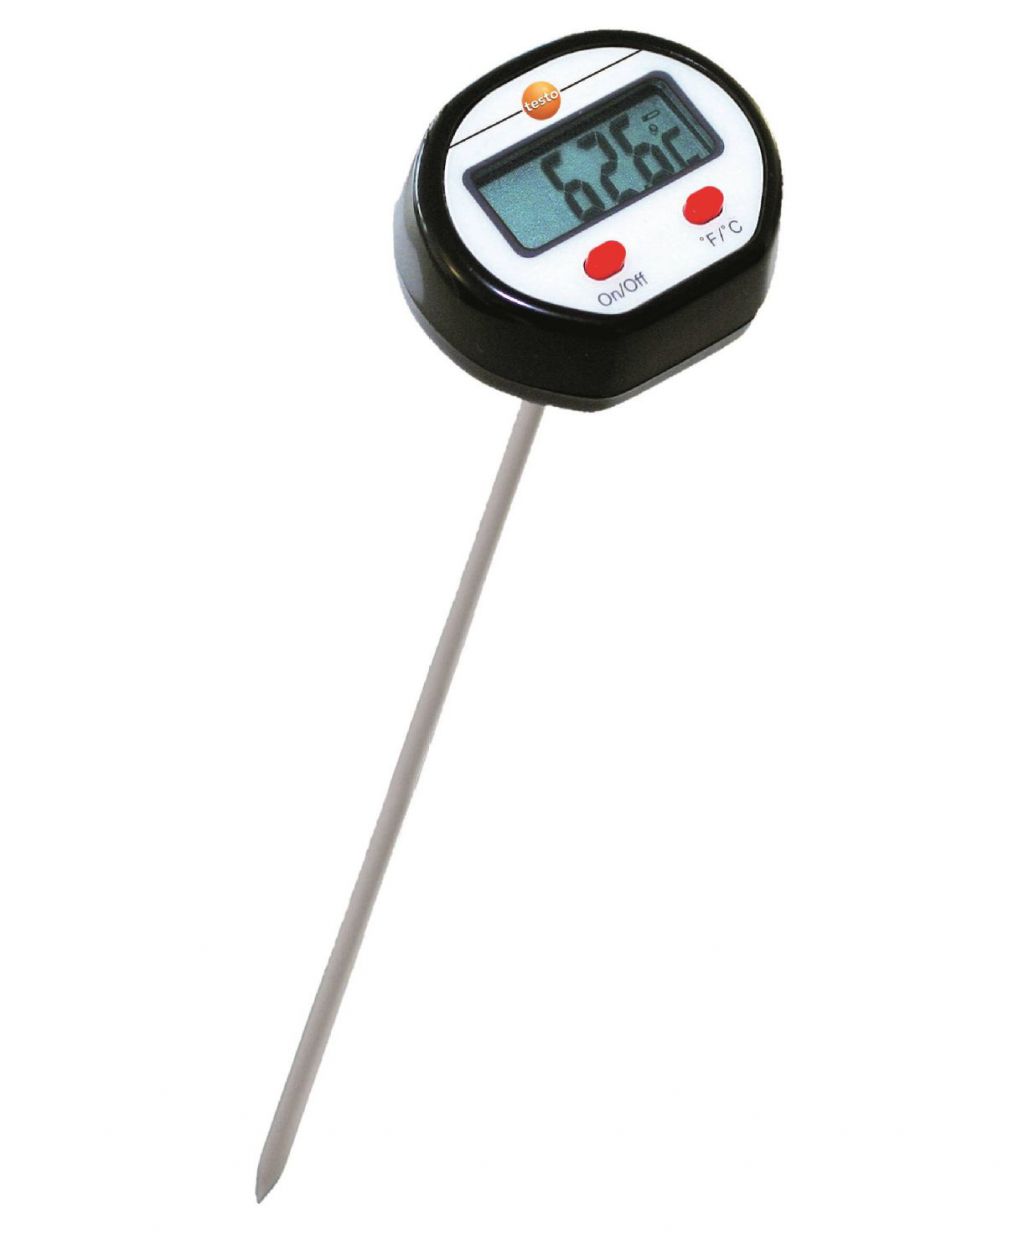 Testo мини-термометр погружной/проникающий стандартный — для измерений температуры воздуха, мягких или сыпучих субстанций, жидкостей